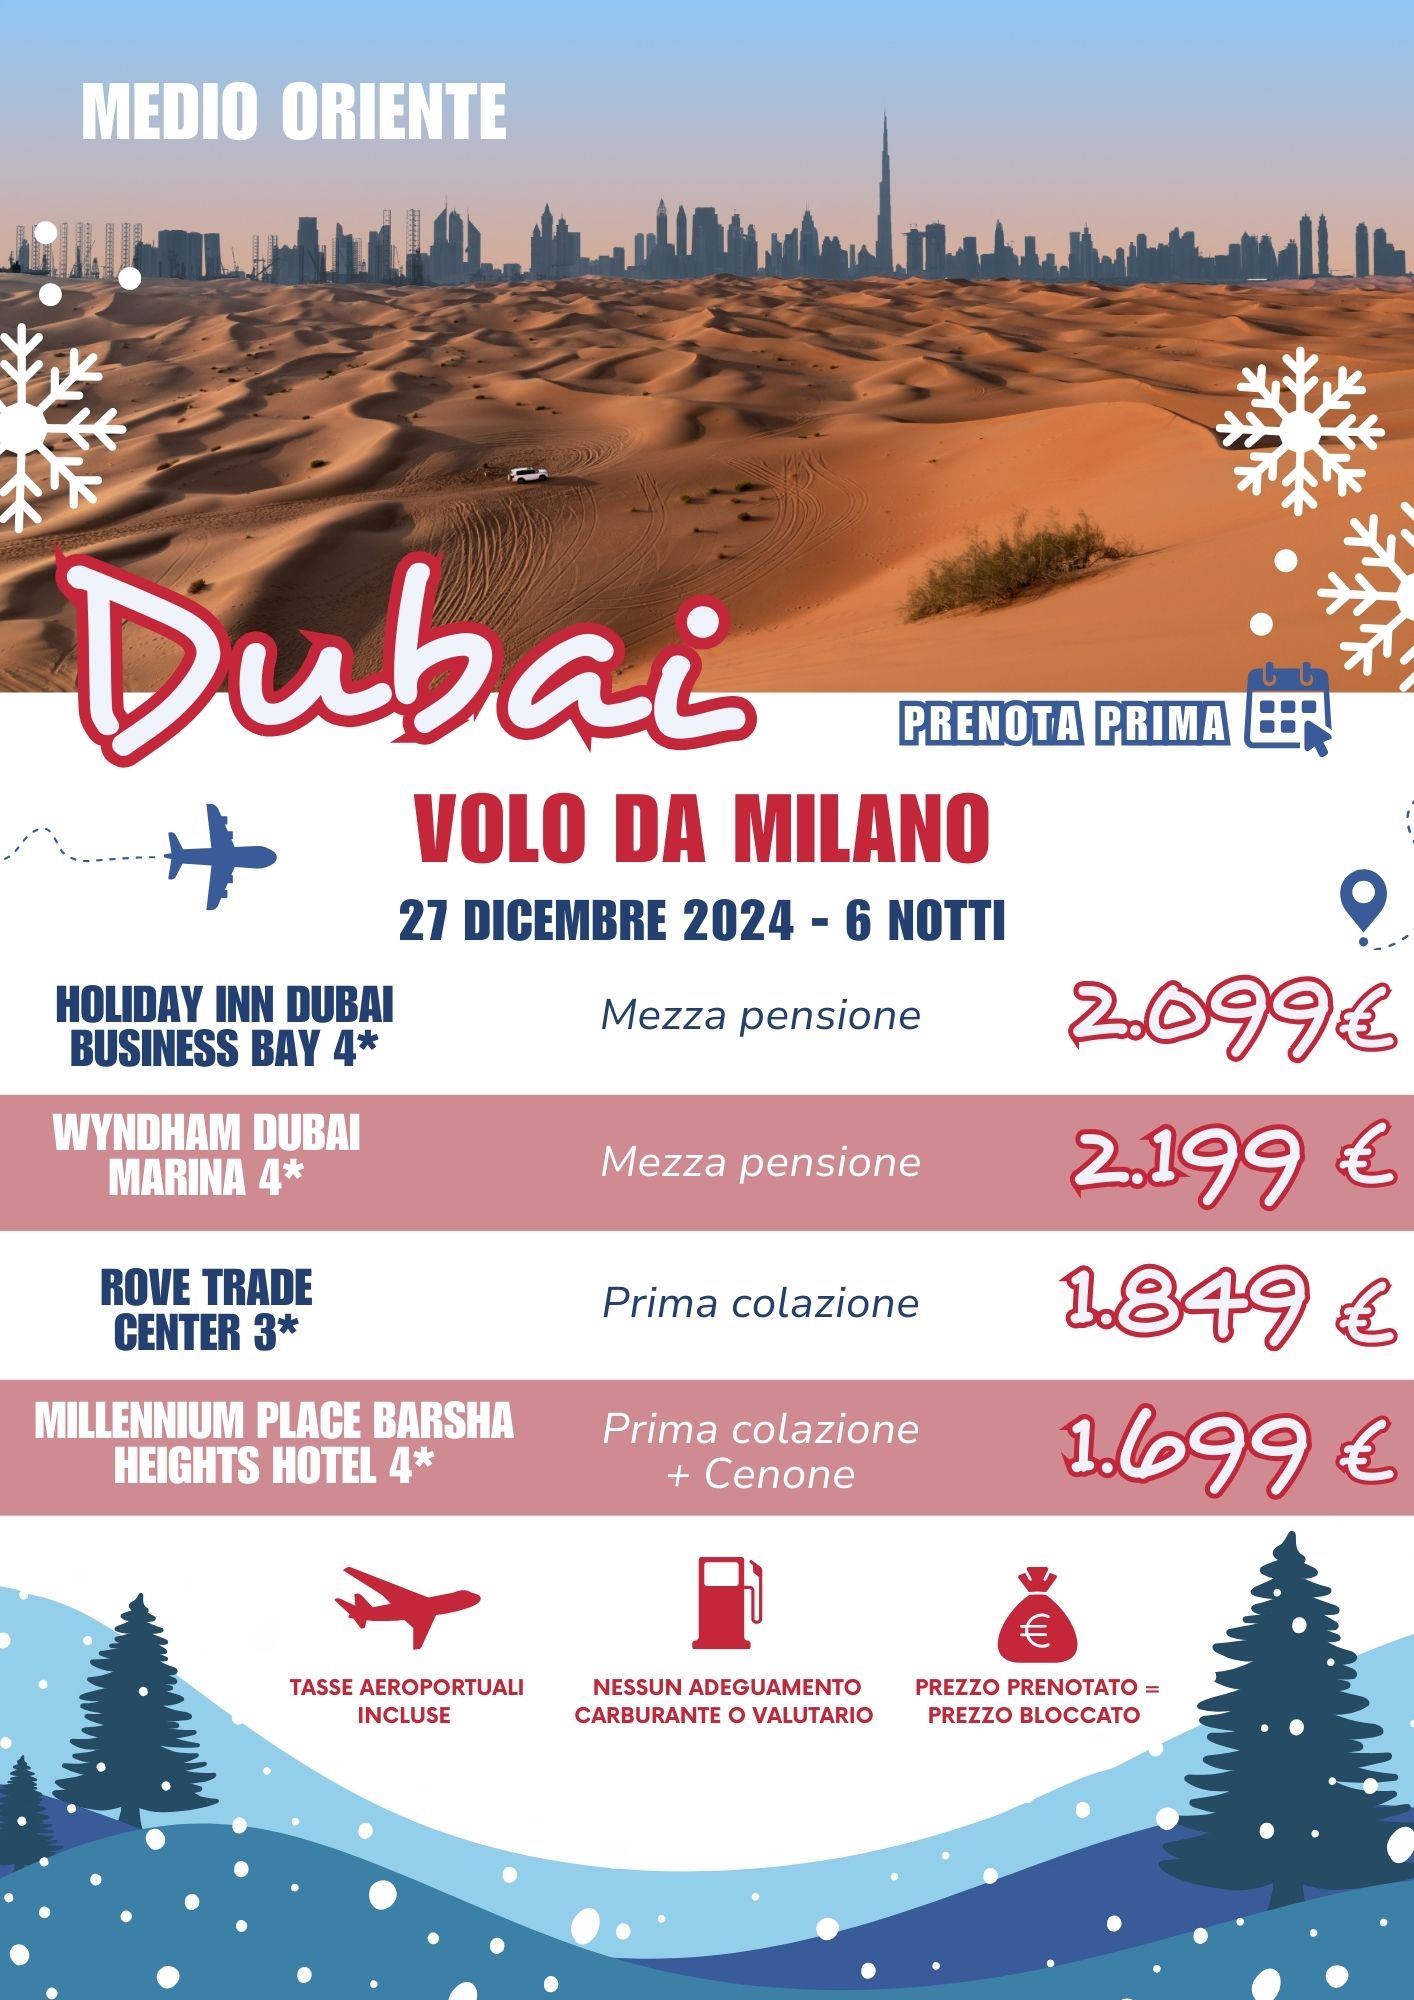 TEOREMA WINTER 2025 -  DUBAI DA MILANO